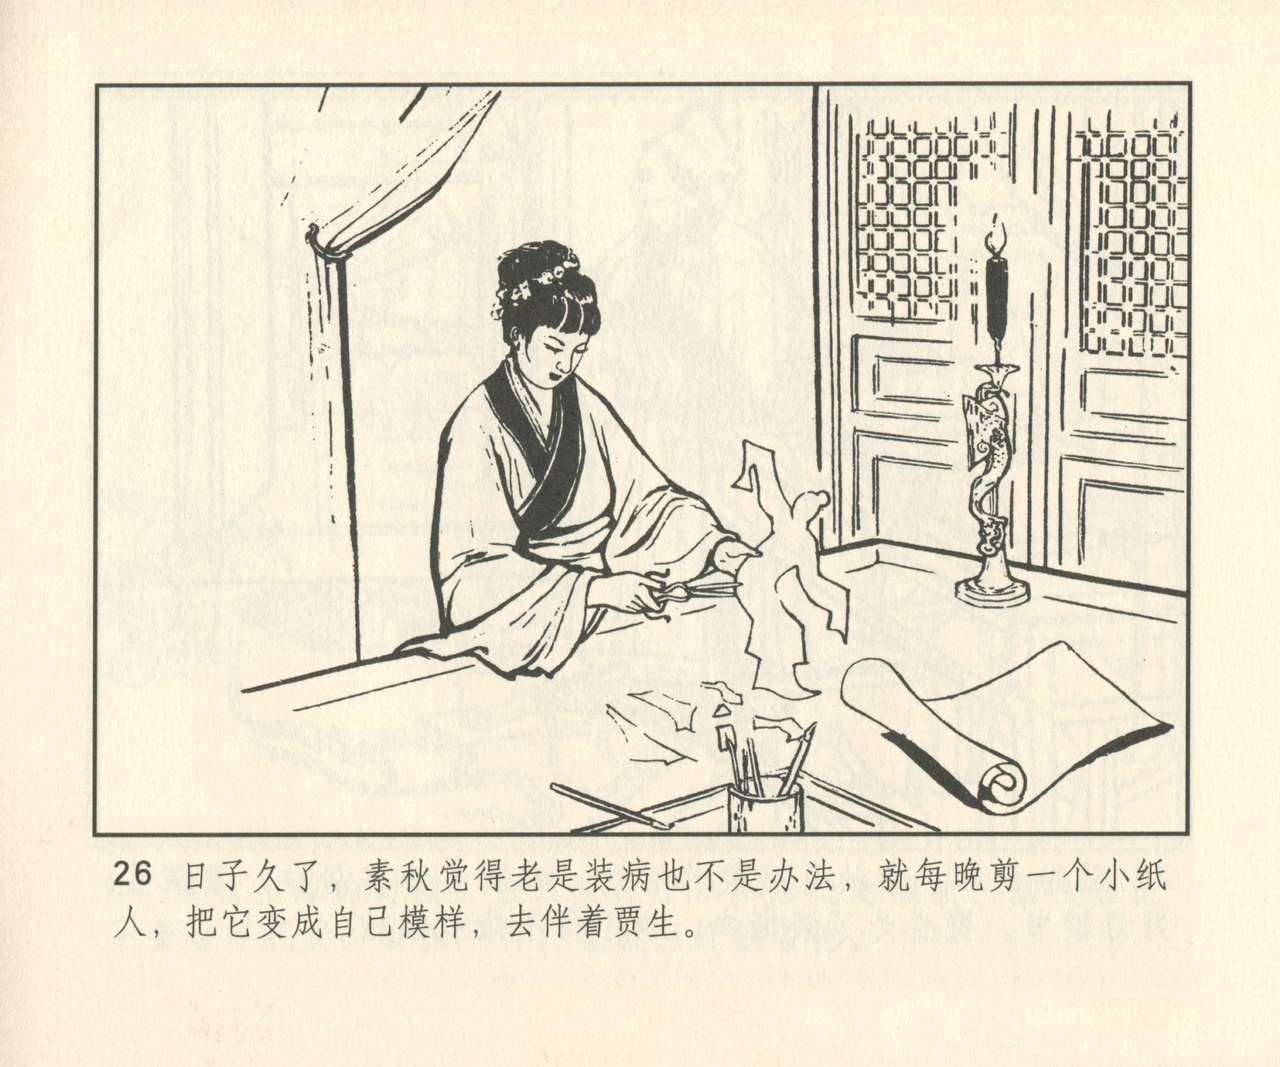 聊斋志异 张玮等绘 天津人民美术出版社 卷二十一 ~ 三十 306